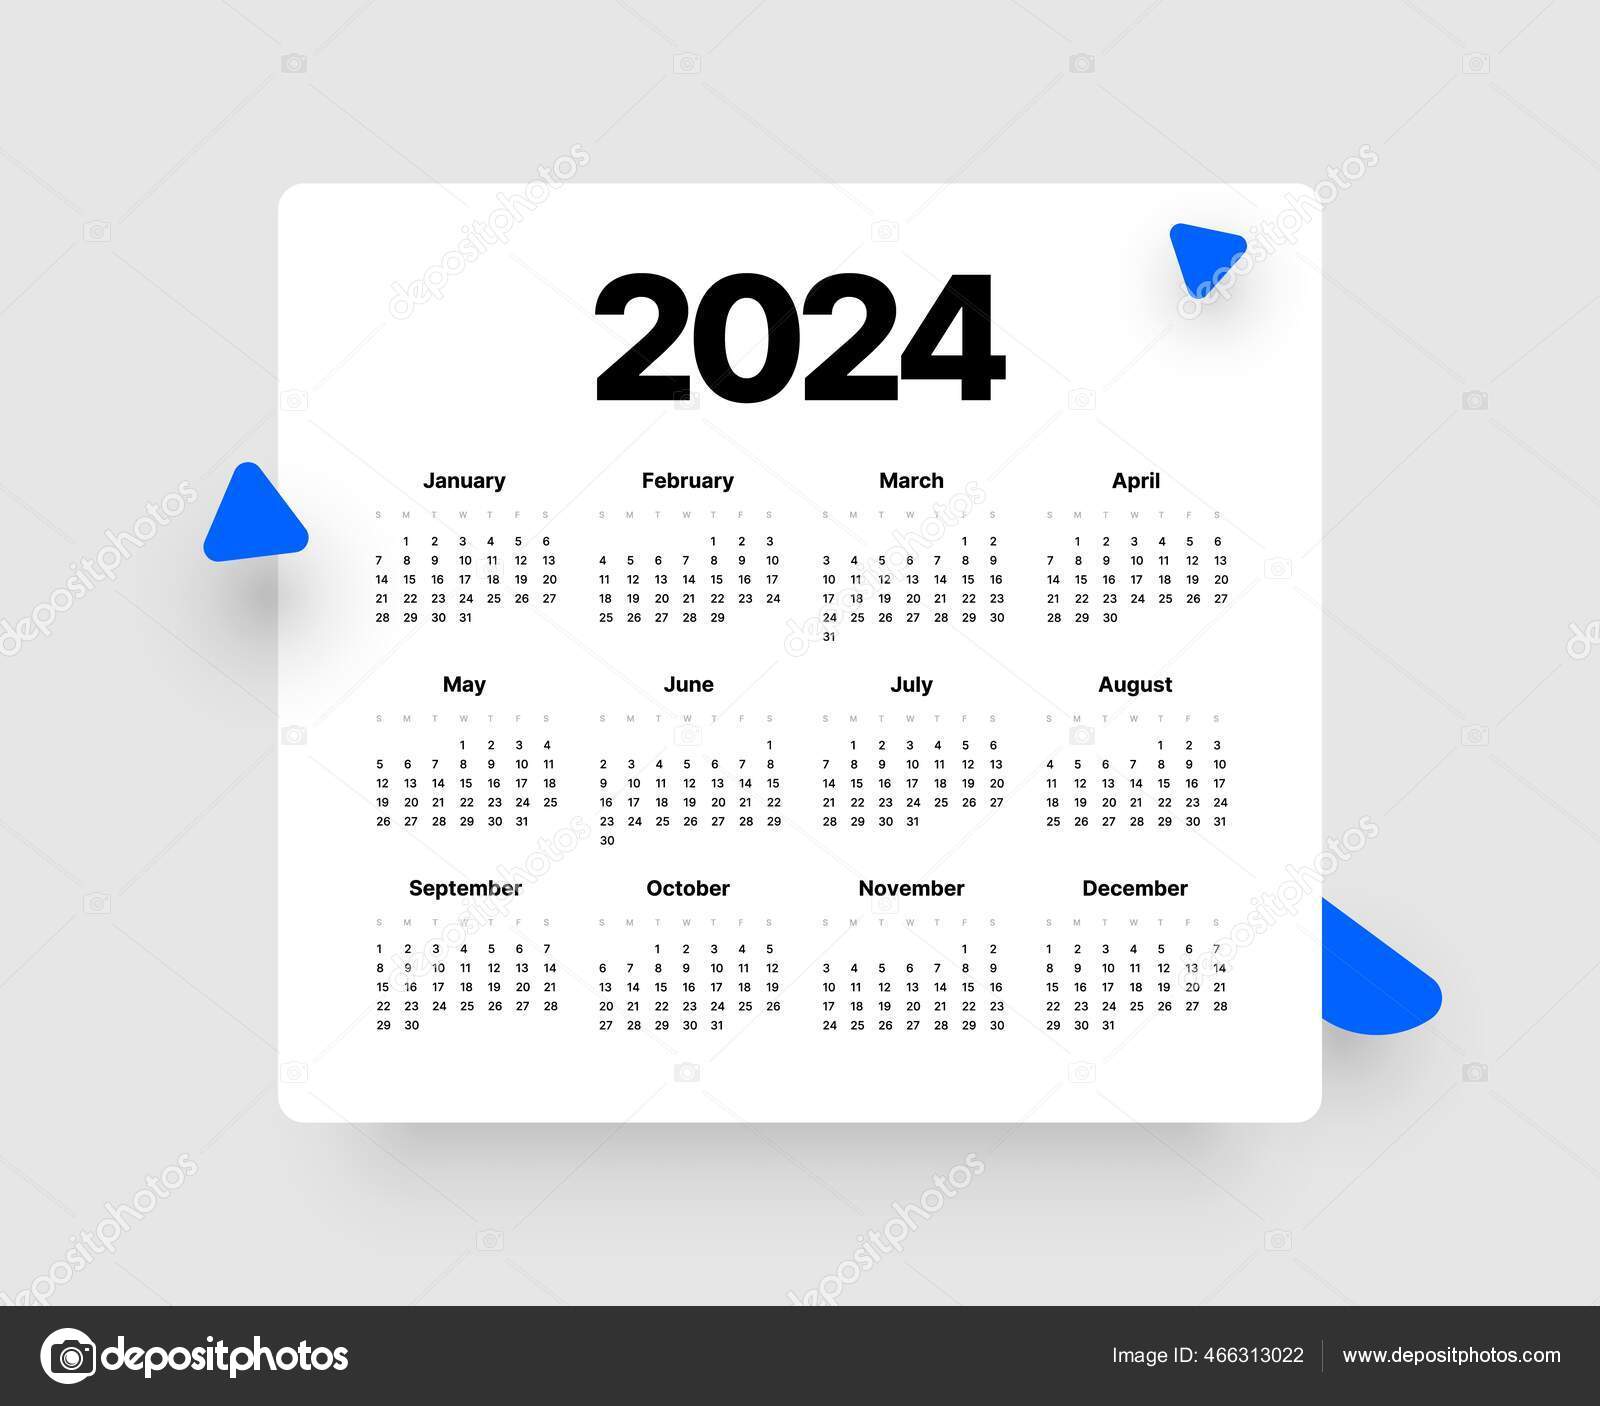 Calendario en español para 2024 la seman